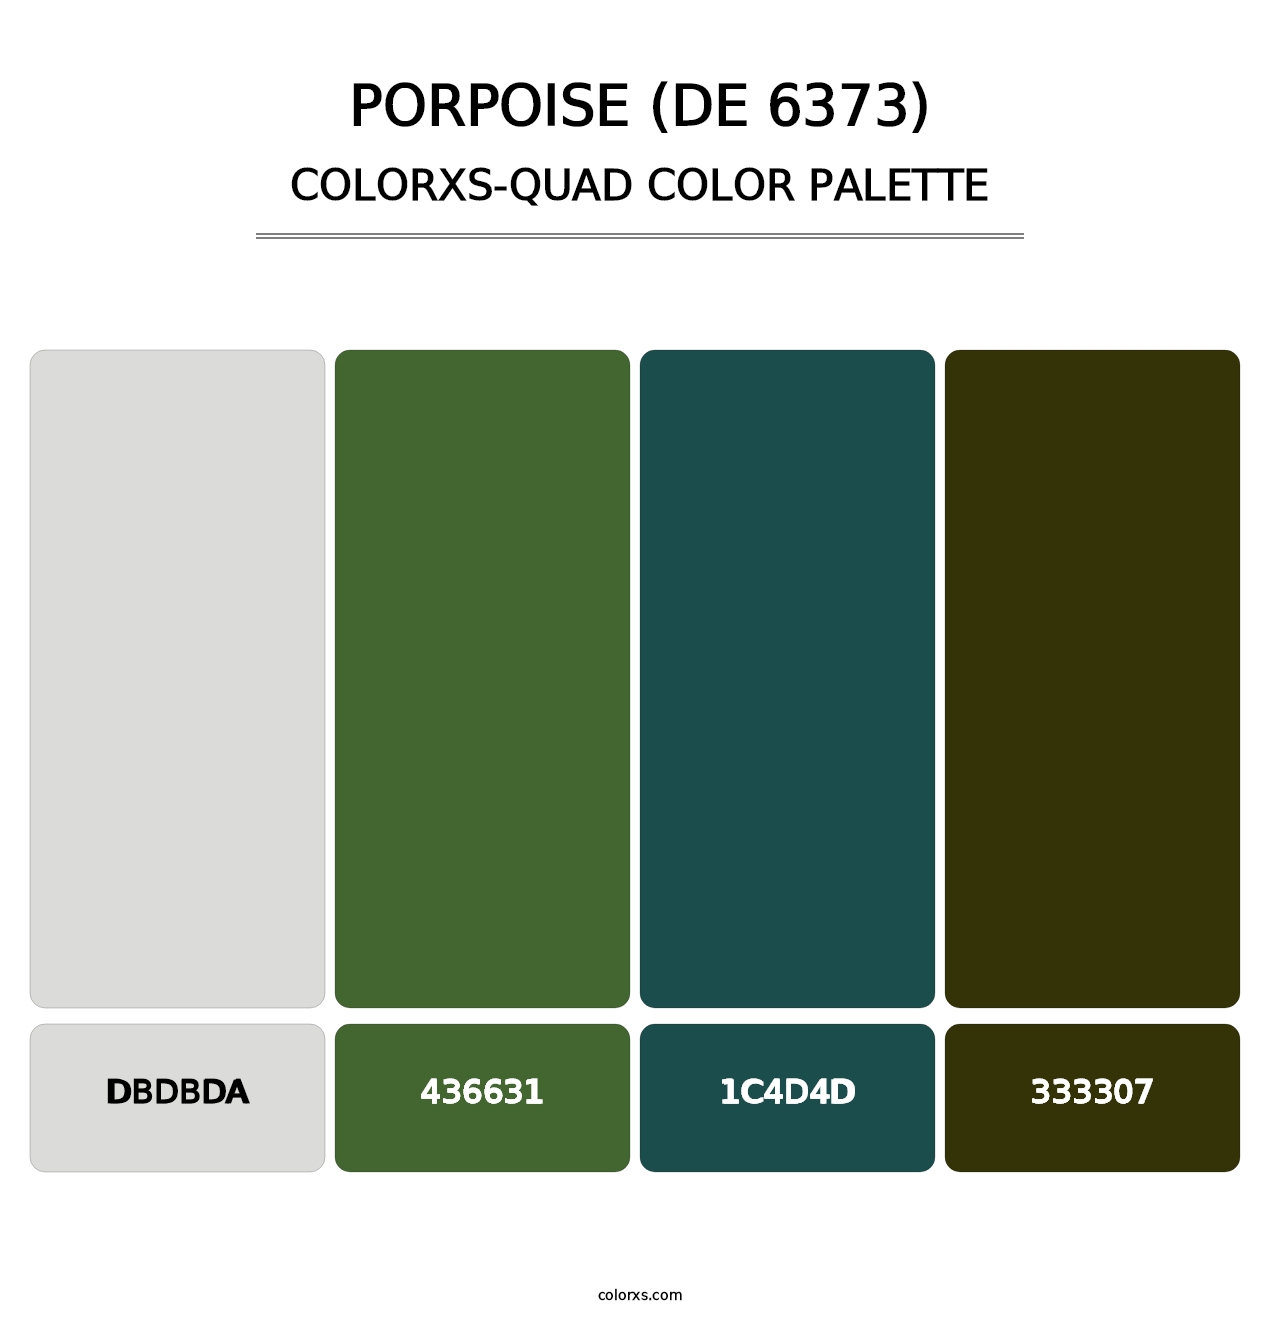 Porpoise (DE 6373) - Colorxs Quad Palette